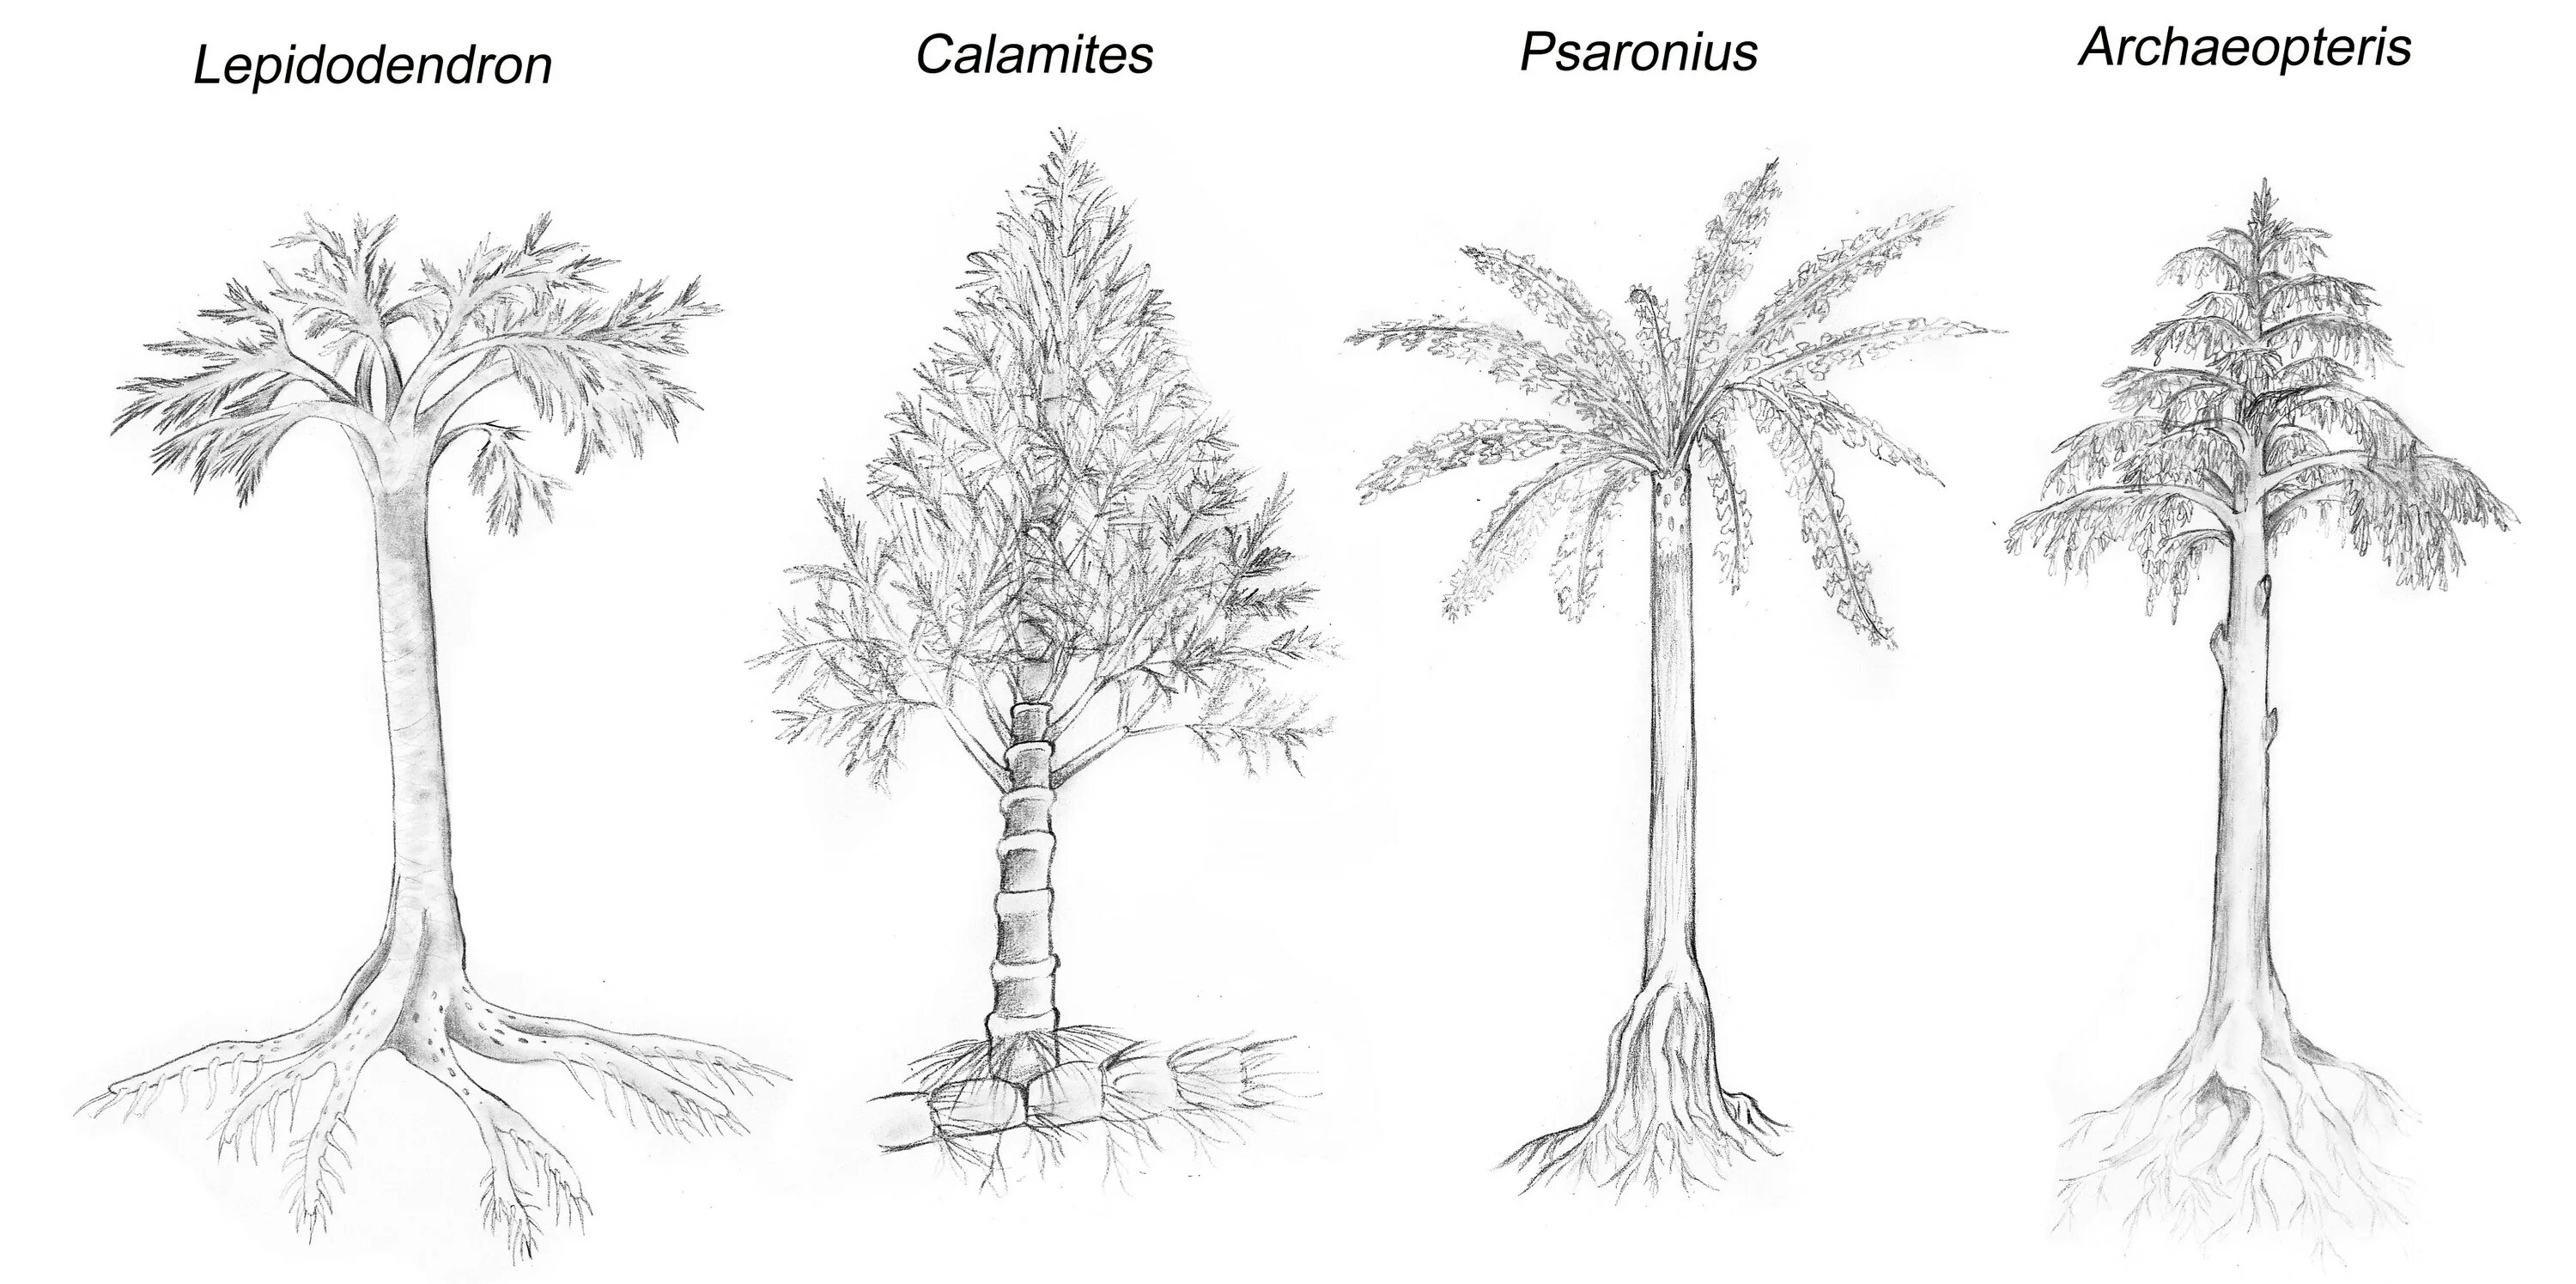 Археоптерис. Археоптерис дерево Эра. Лепидодендрон. Каламит растение. Лепидодендрон высота.